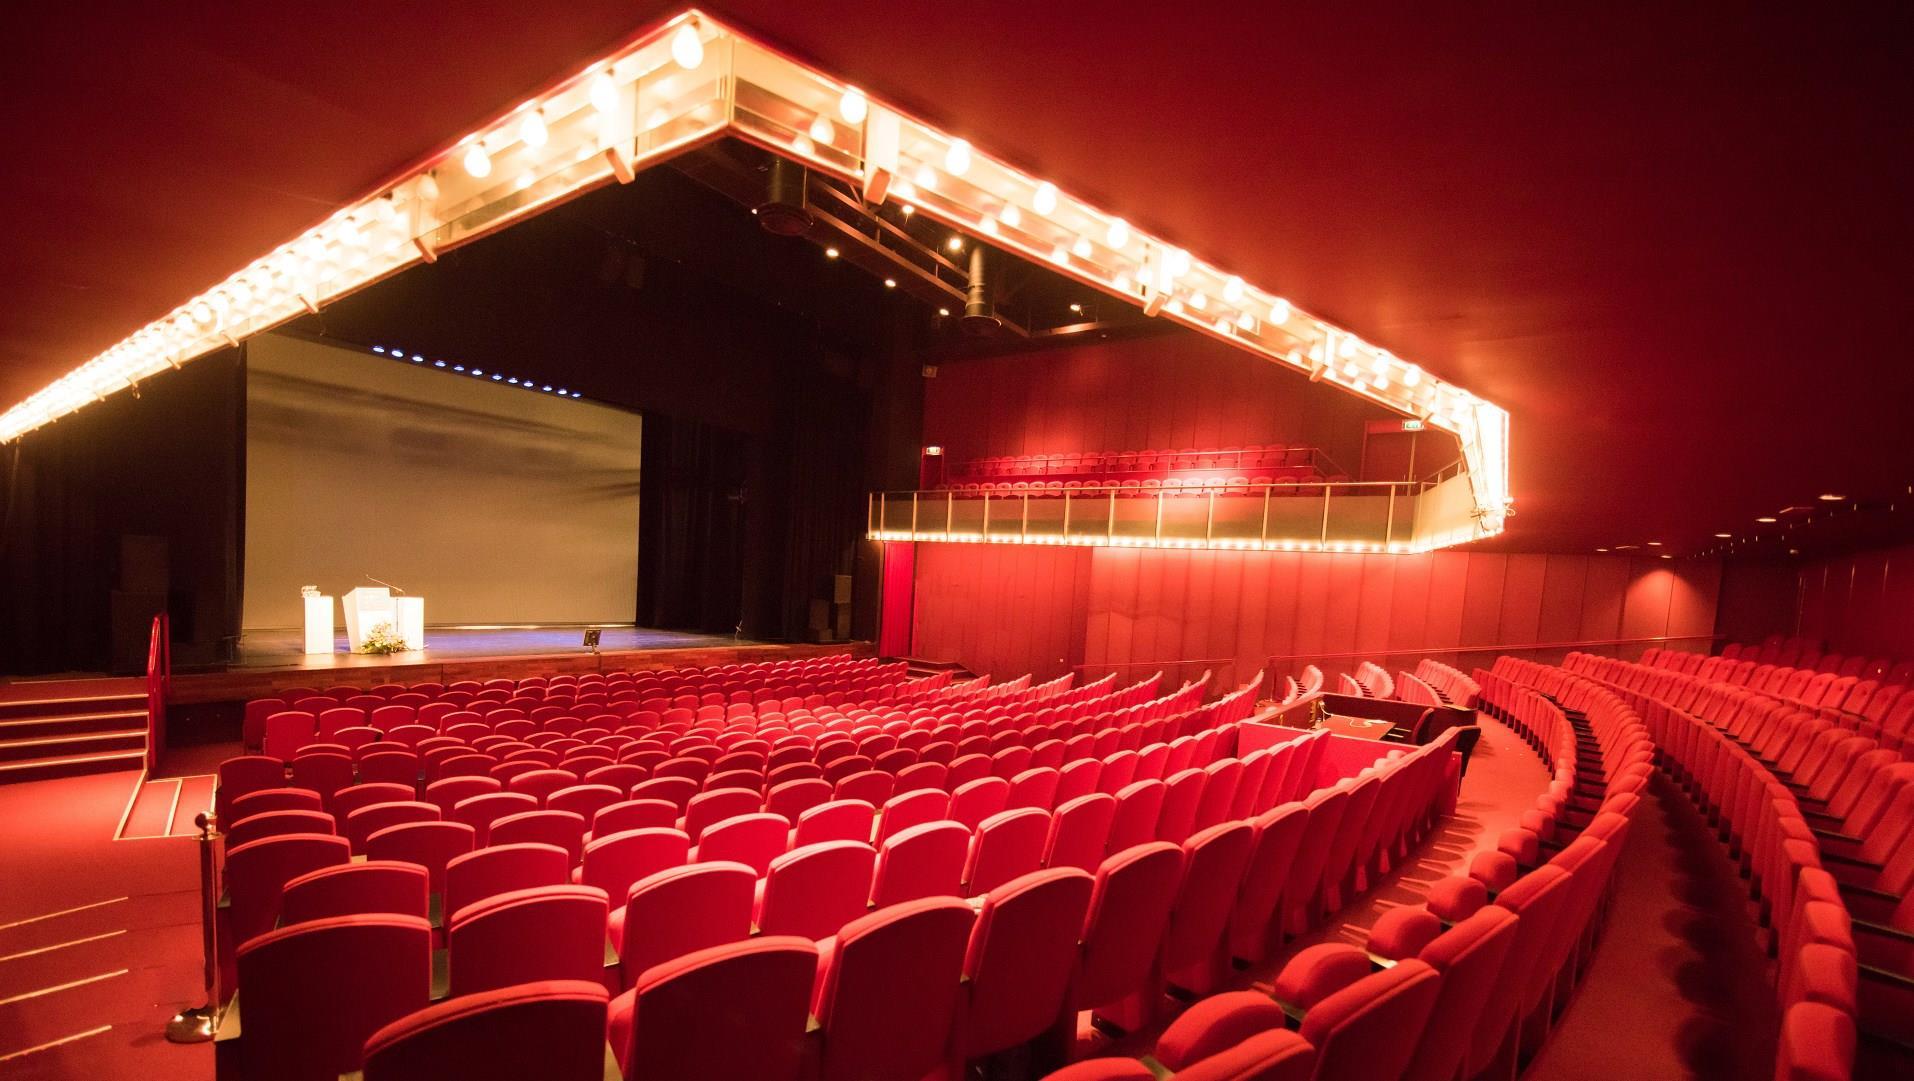 Meervaart Theatre and Congress Center in Amsterdam, NL